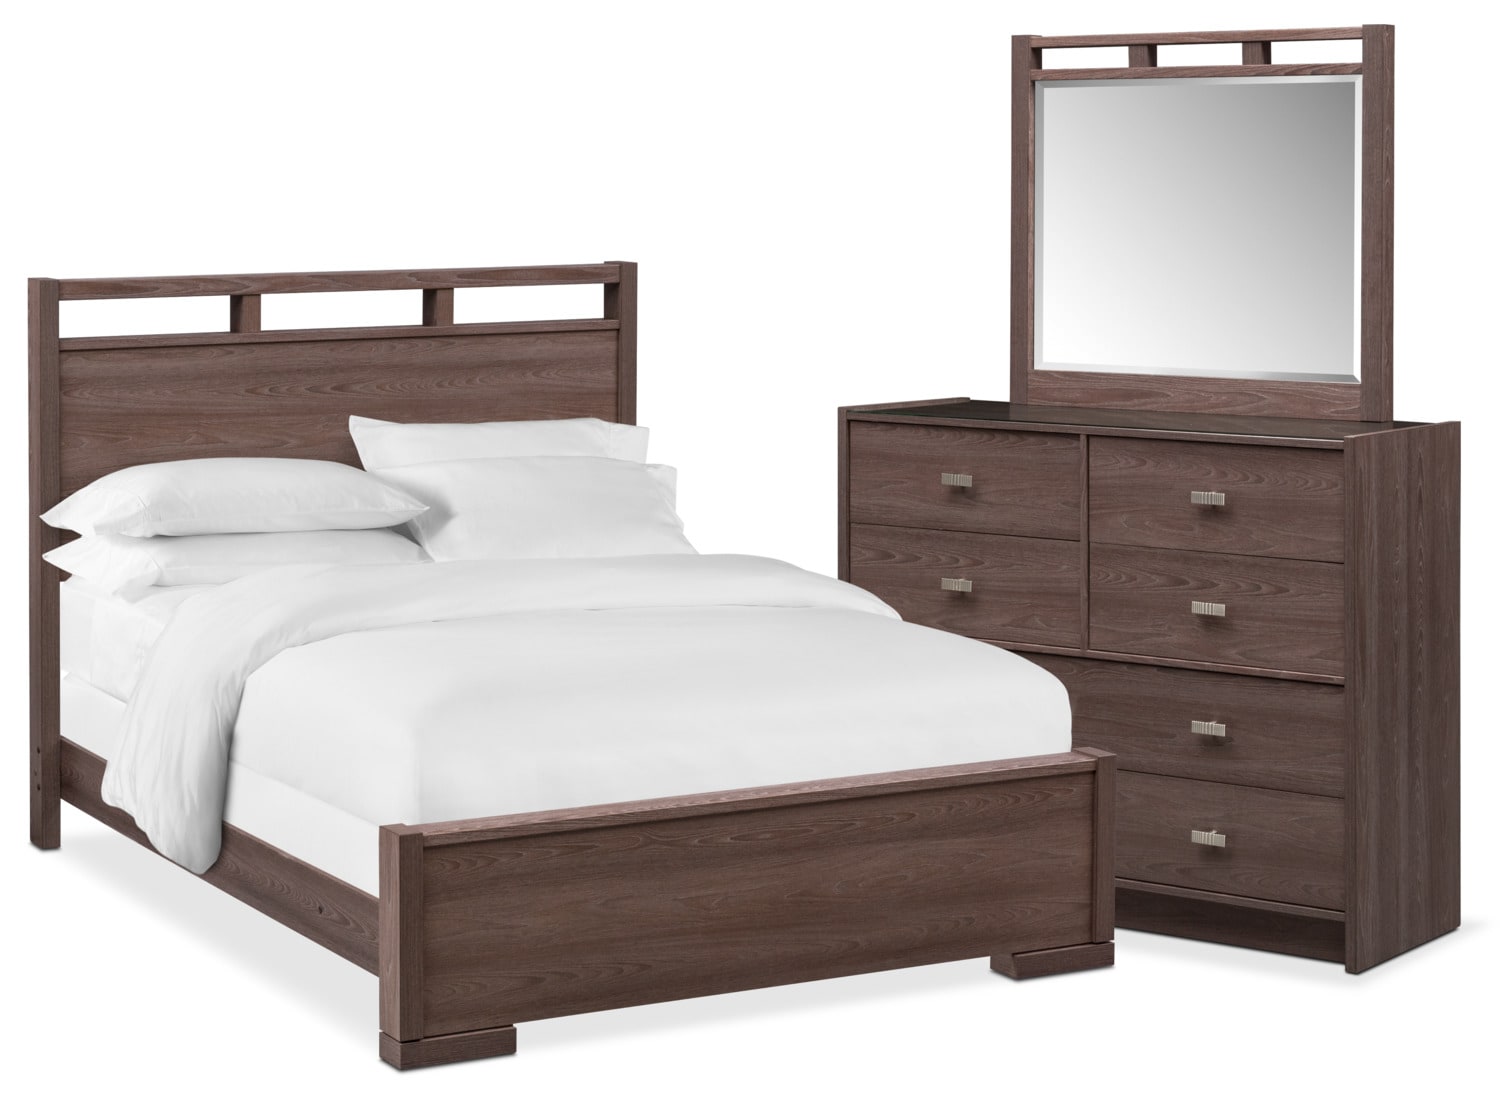 value city furniture childrens bedroom sets